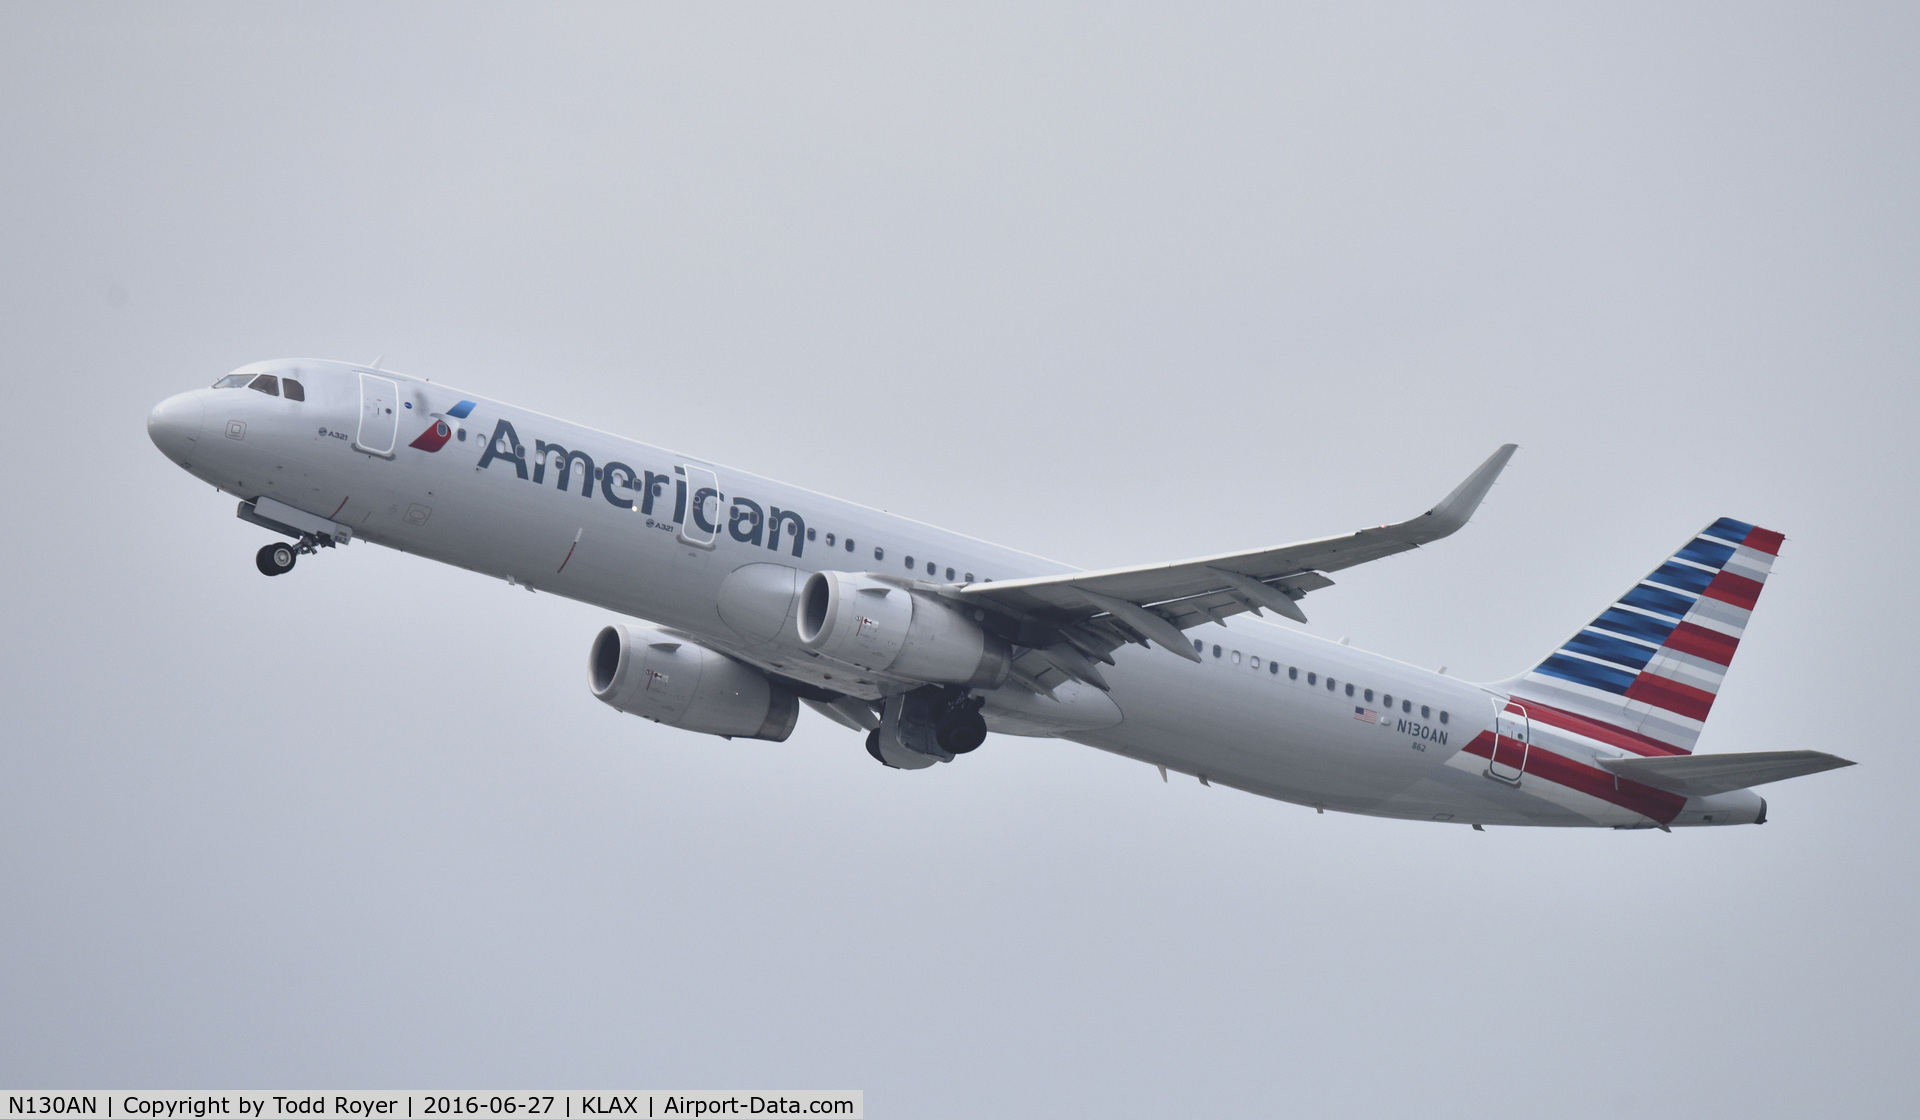 N130AN, 2014 Airbus A321-231 C/N 6407, Departing LAX